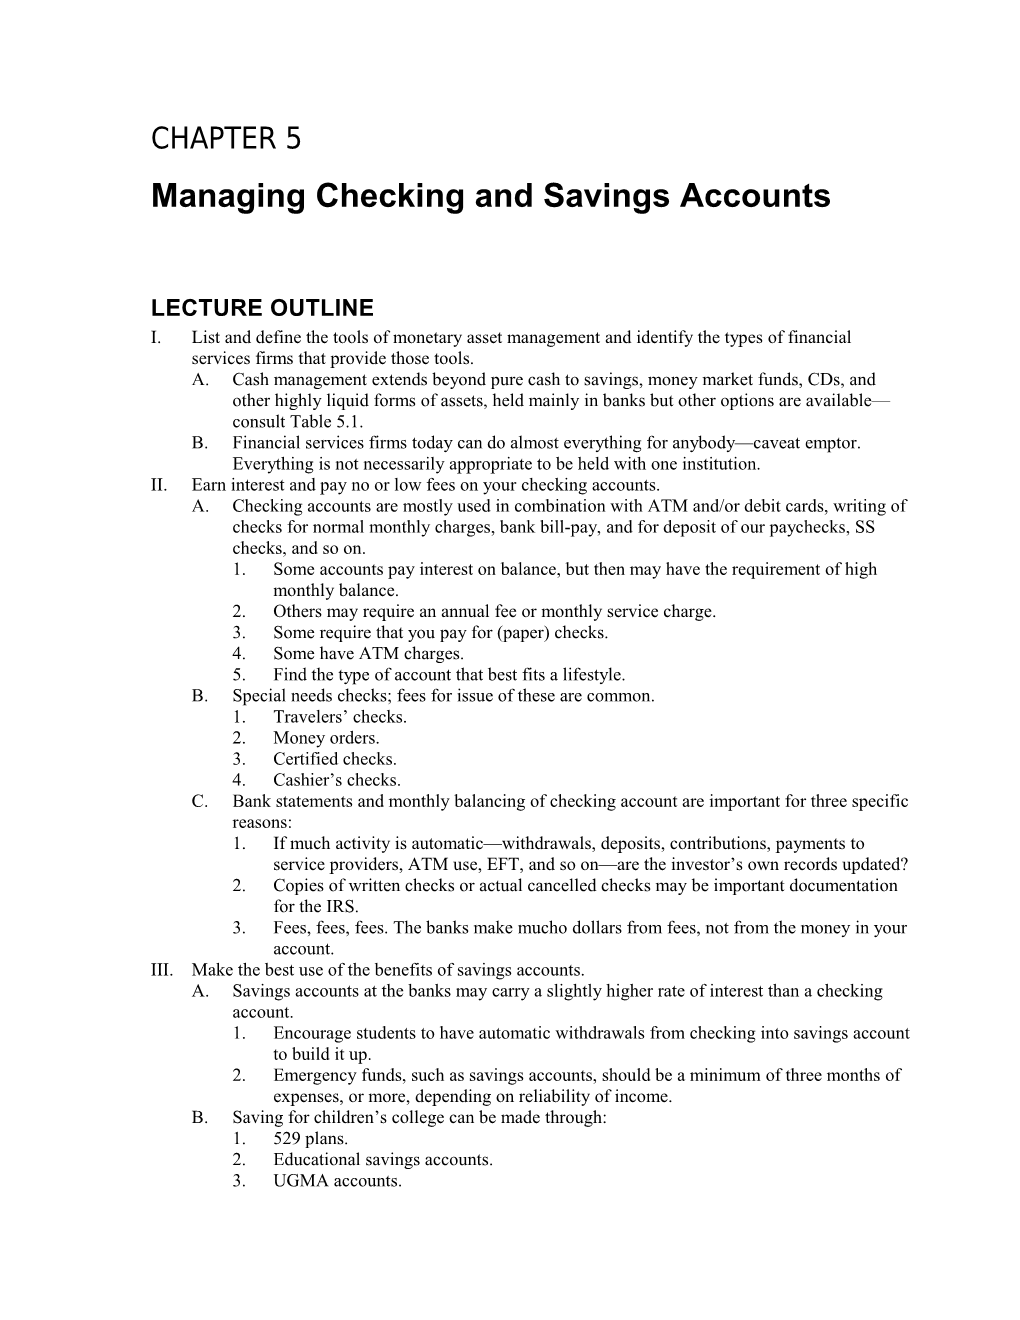 Managing Checking and Savings Accounts